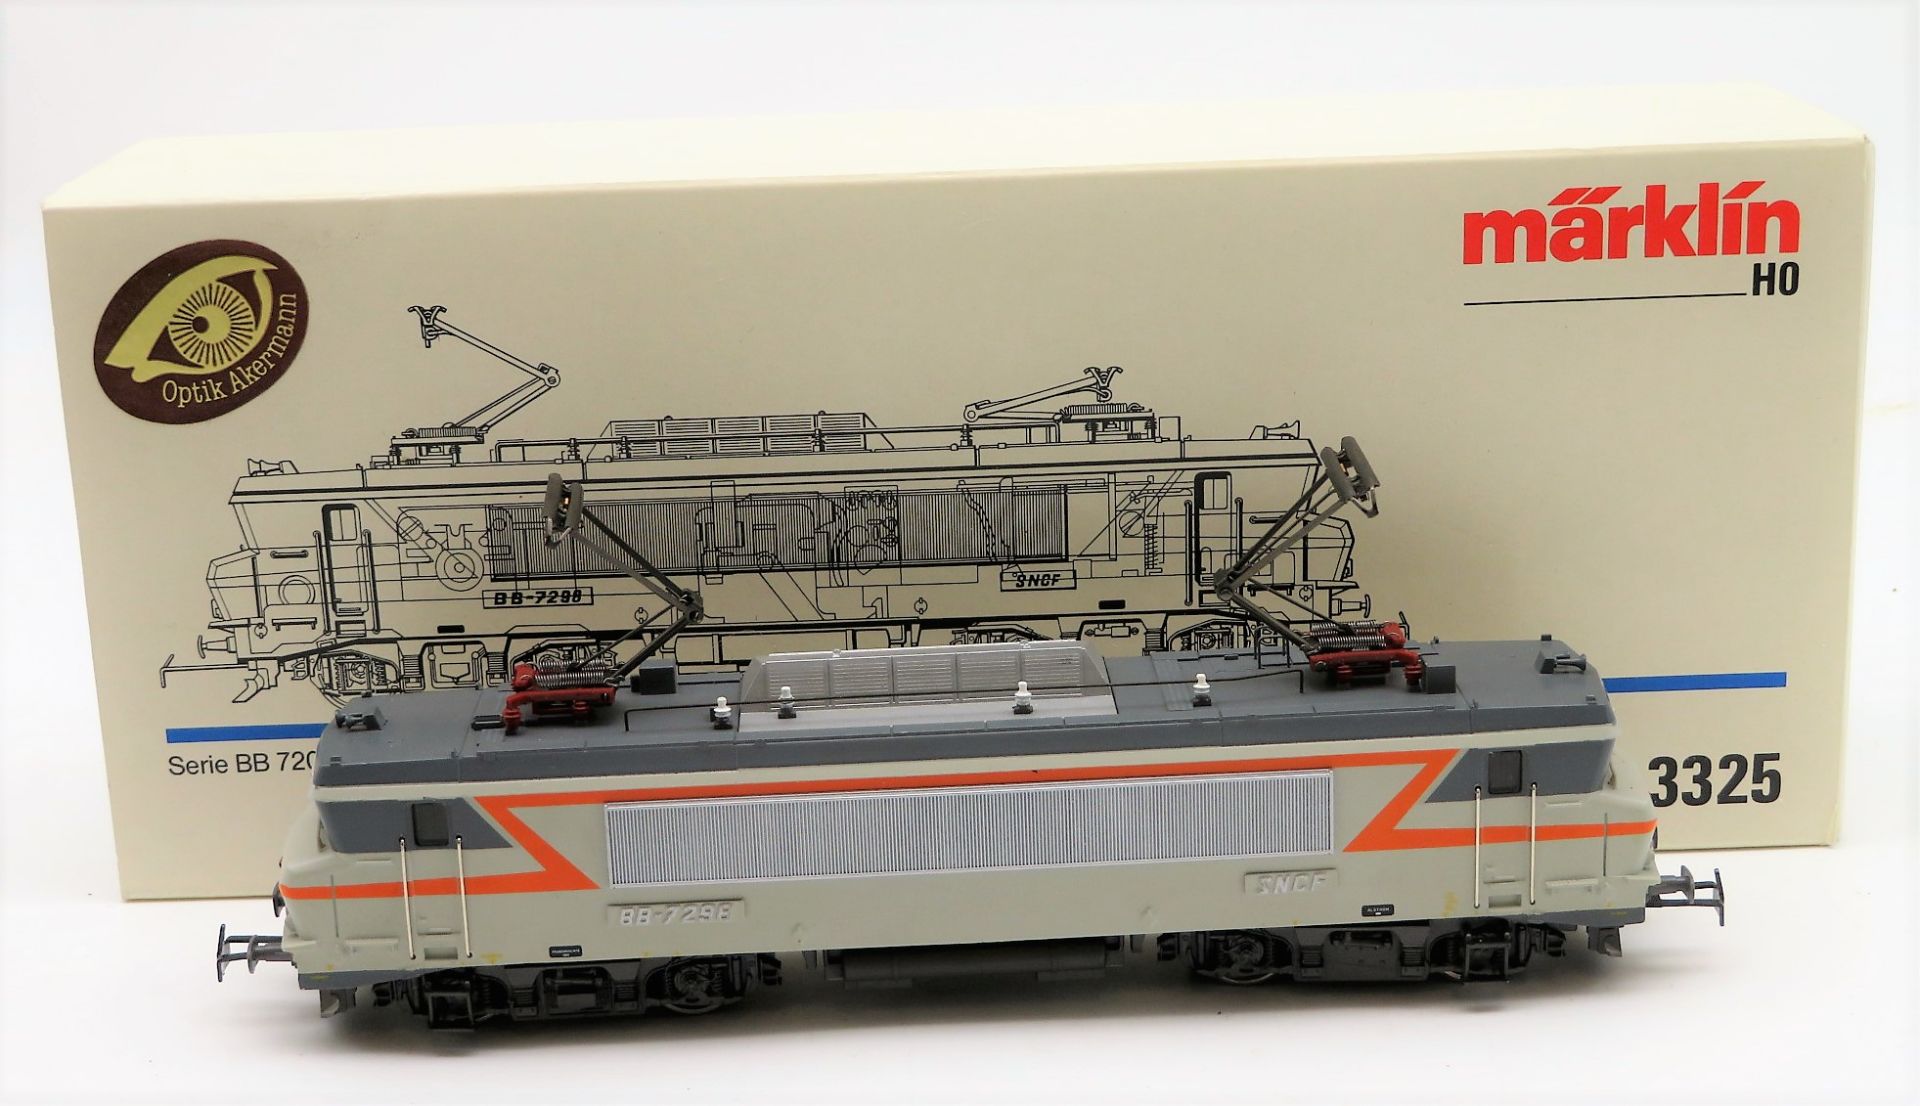 Elektro-Lokomotive, BR BB7298 der SNCF, Märklin, H0 analog, Nr. 3325, OVP, ausgezeichneter Zustand,